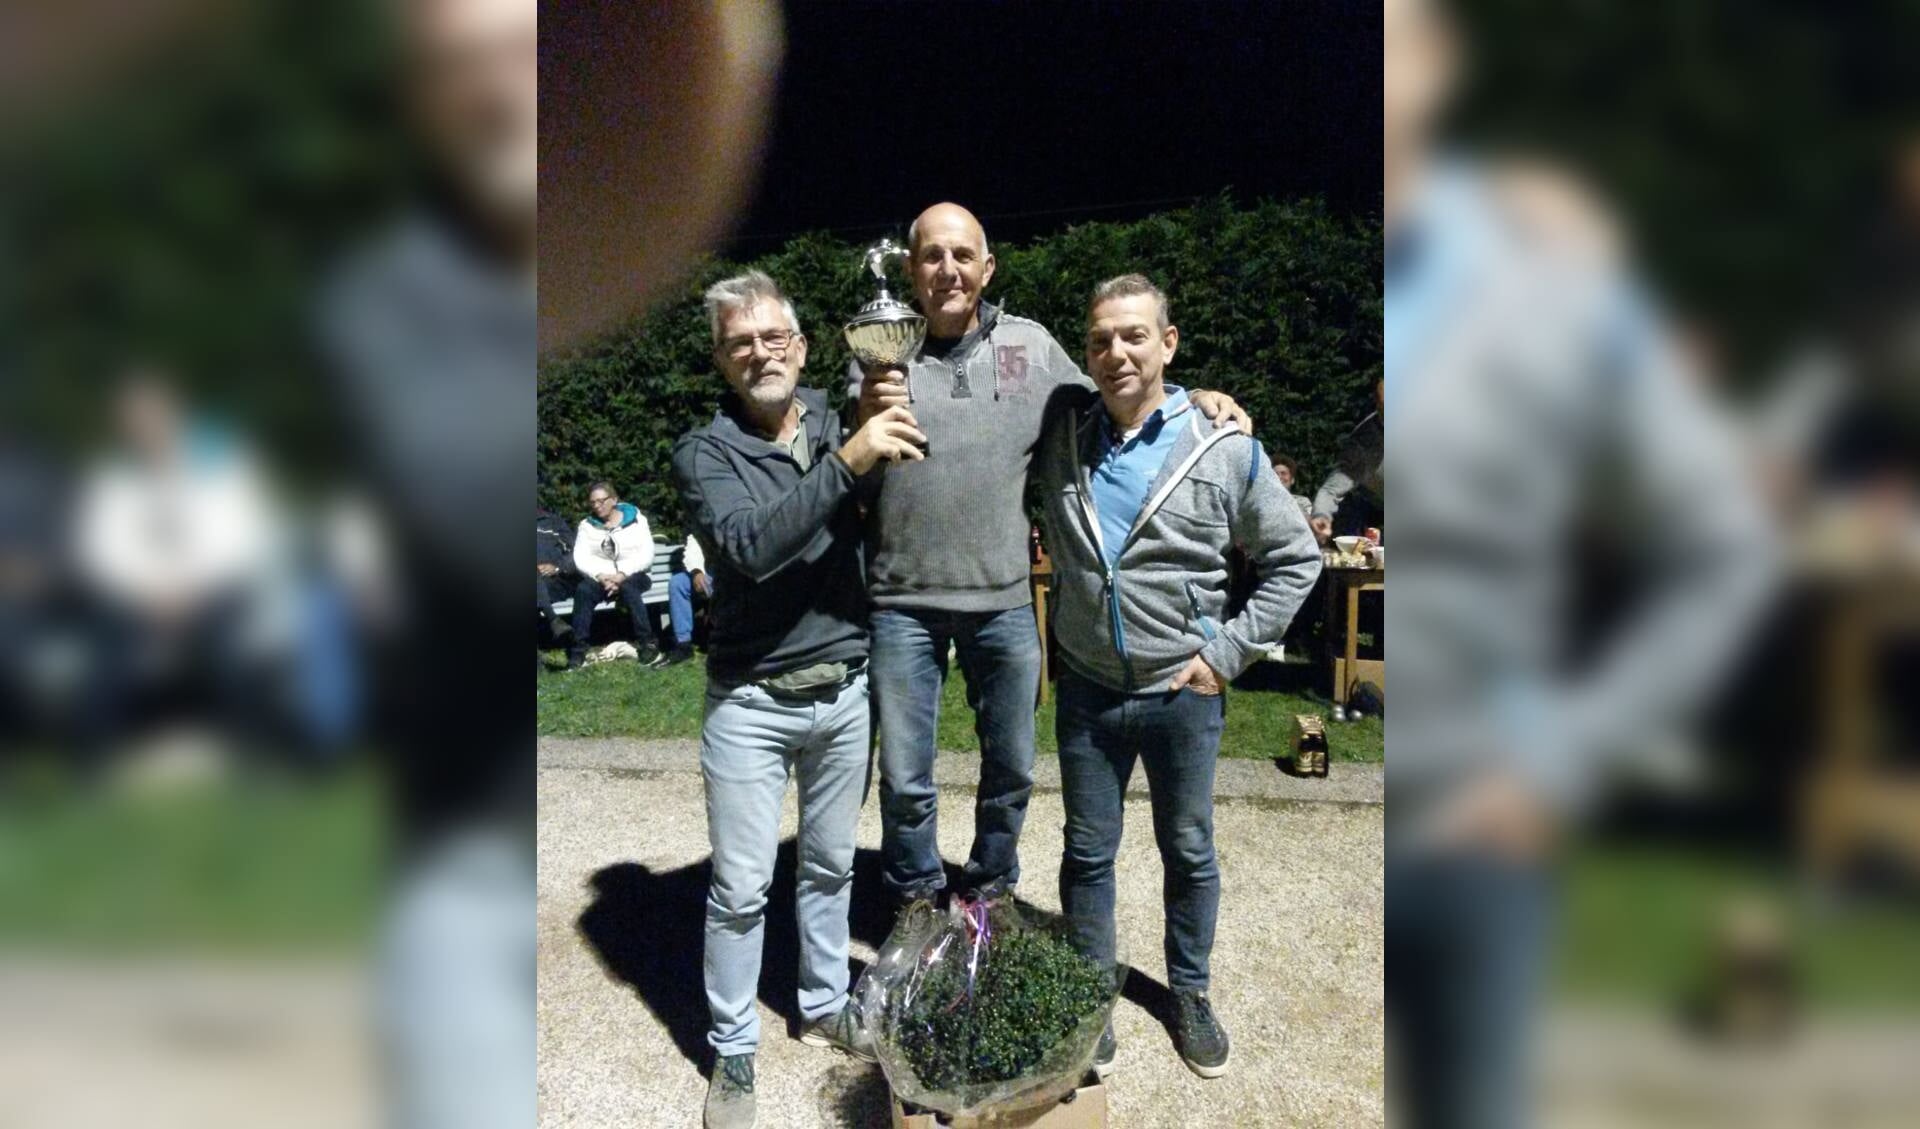 KnolBoules-winnaar Mart van der Vlekkert met de wisselbeker, geflankeerd door Marcel Bults (links) en Robert Jan Krijgsman. (Foto: Bart van der Laan)